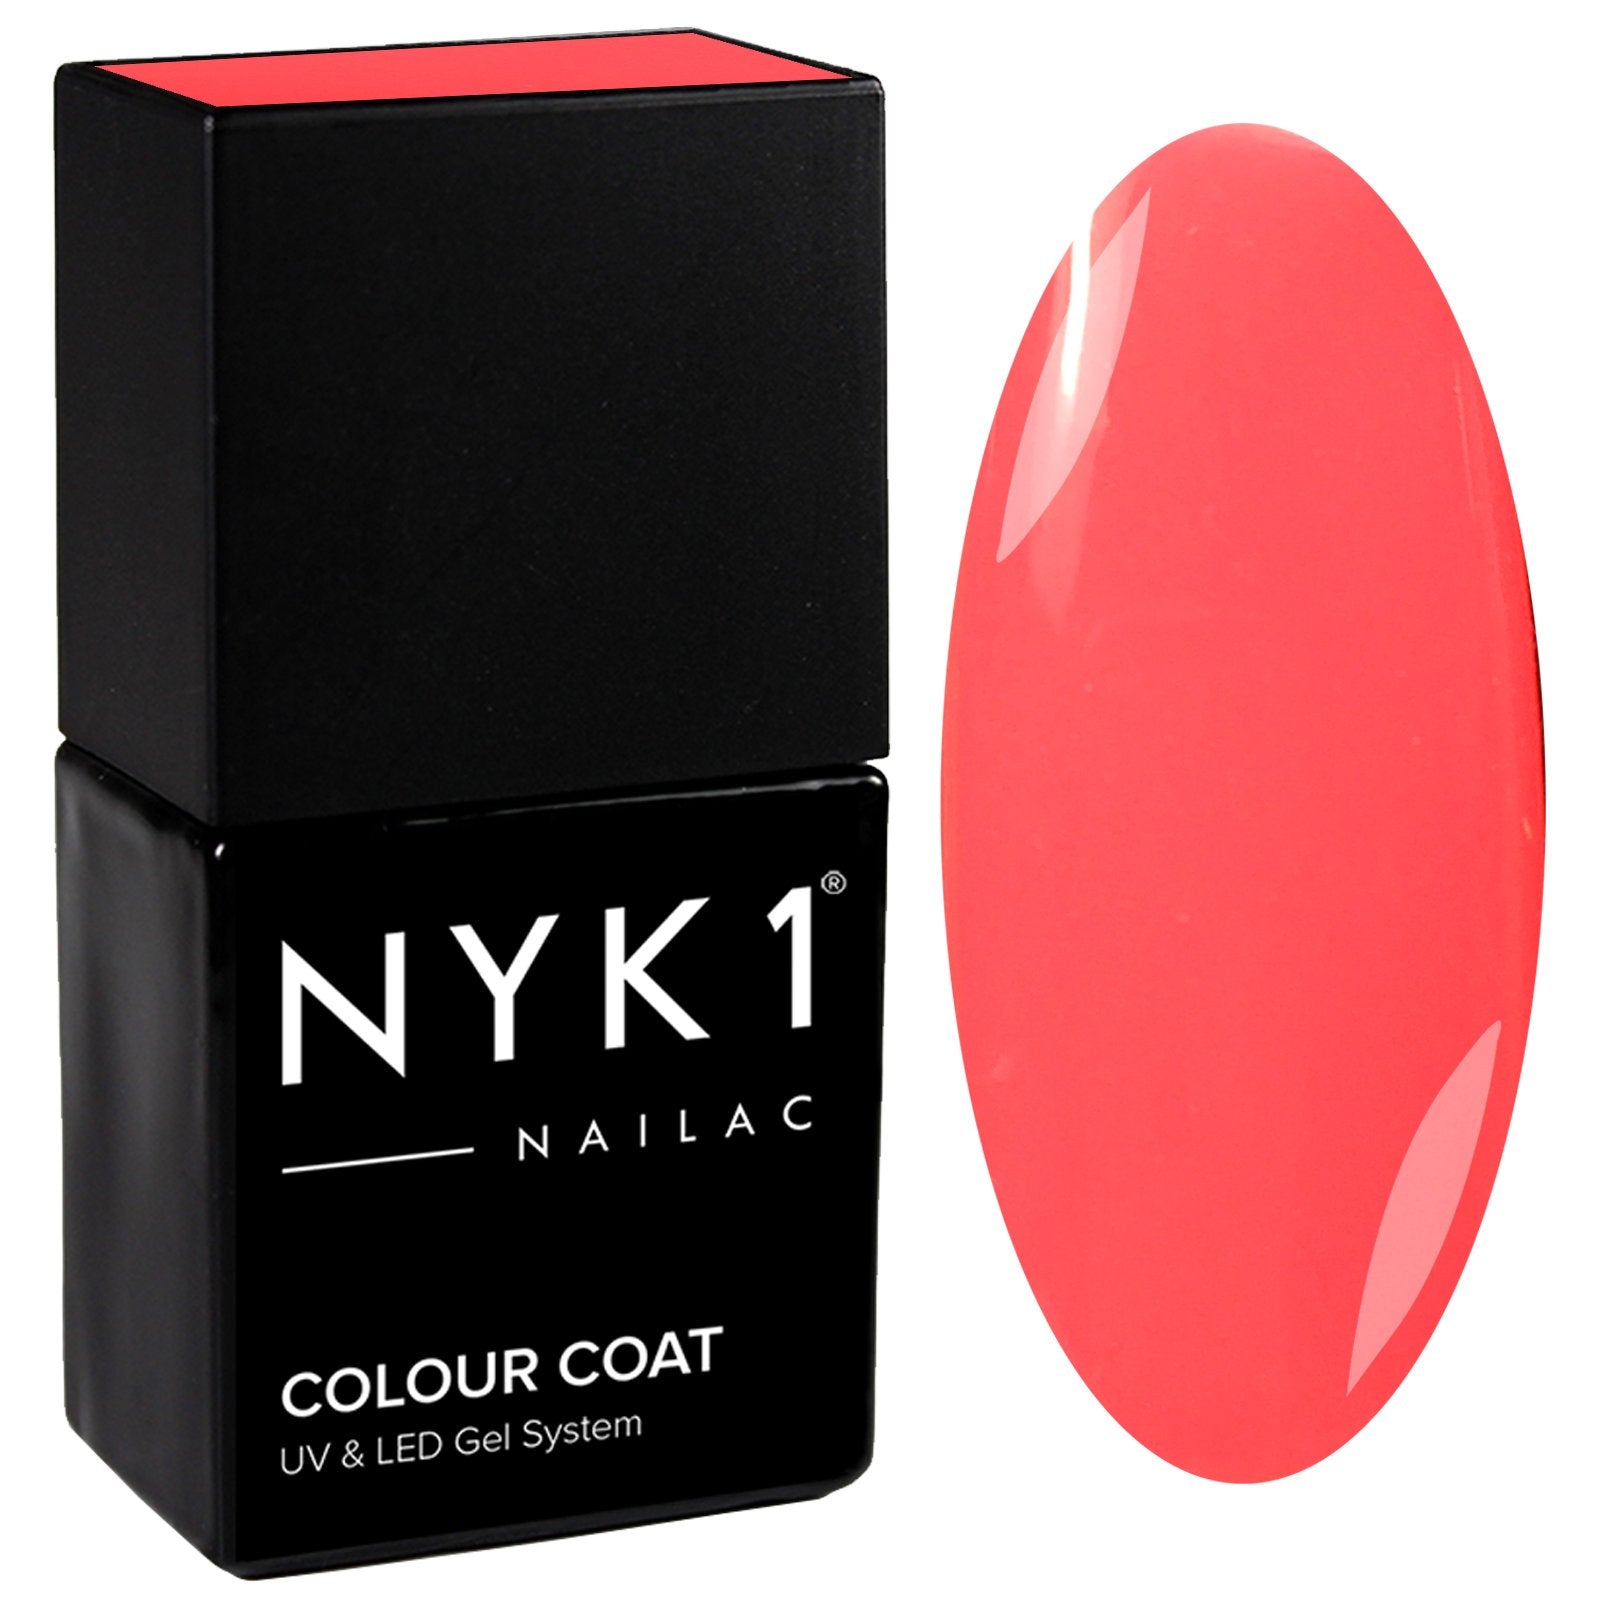 NYK1 Nailac Lydia Neon Pink Peach Gel Nail Polish